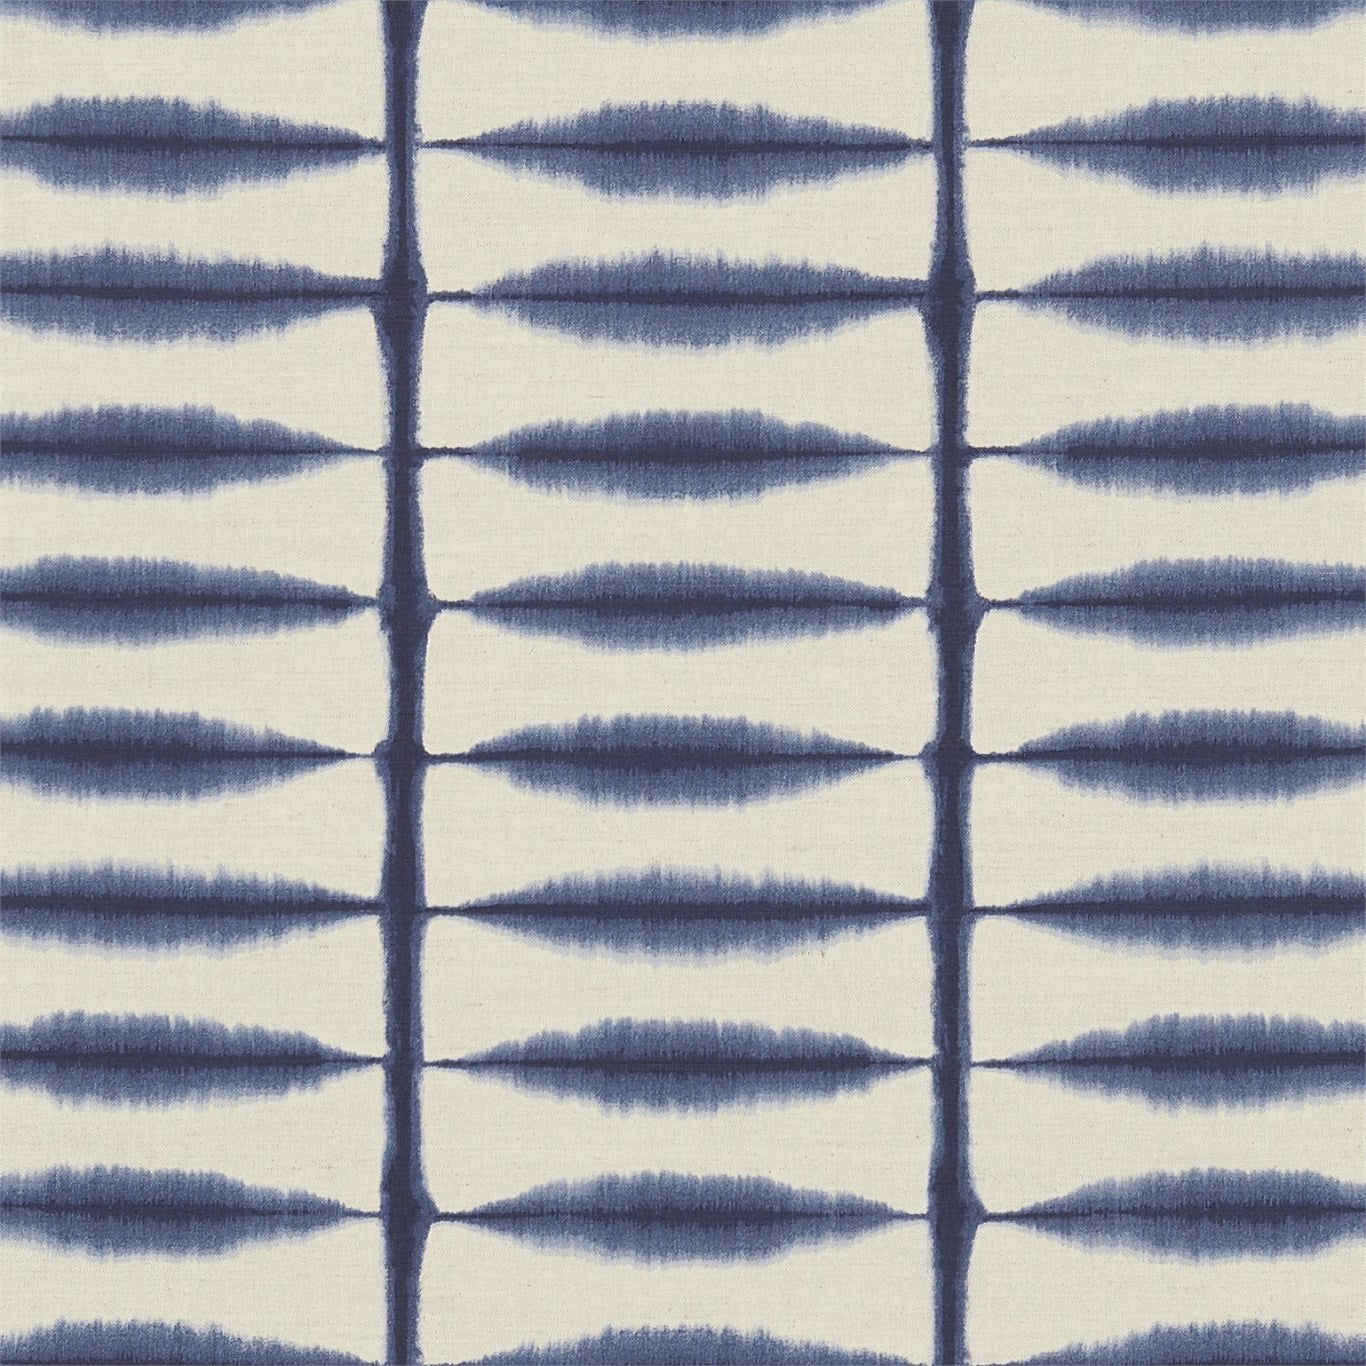 Shibori Fabric by Scion